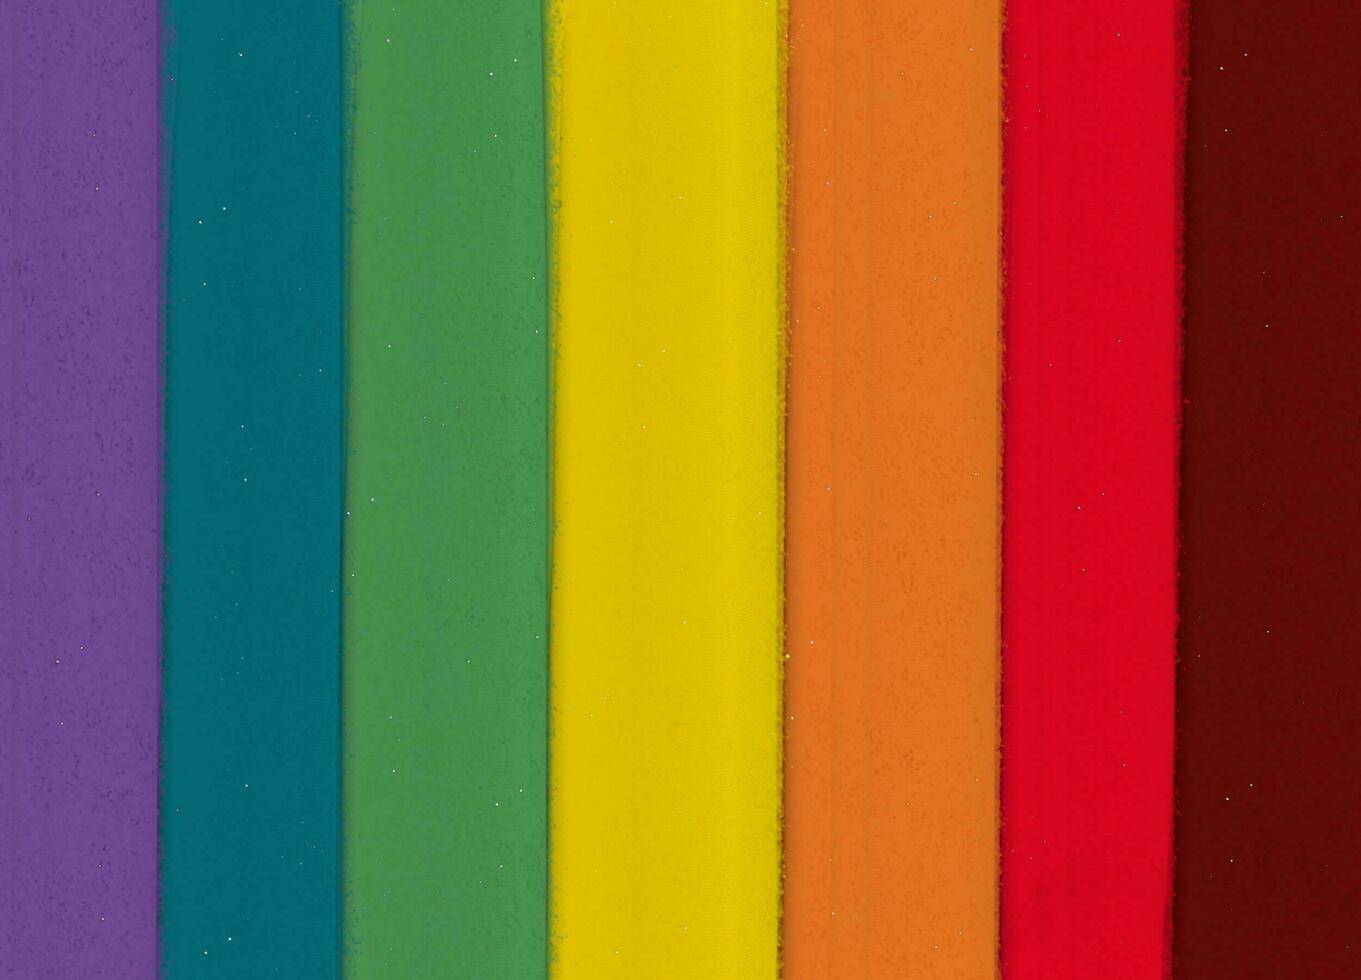 mehrfarbig Hintergründe umfassen lila, Grün, Gelb, orange, rot und dunkel Rot. foto